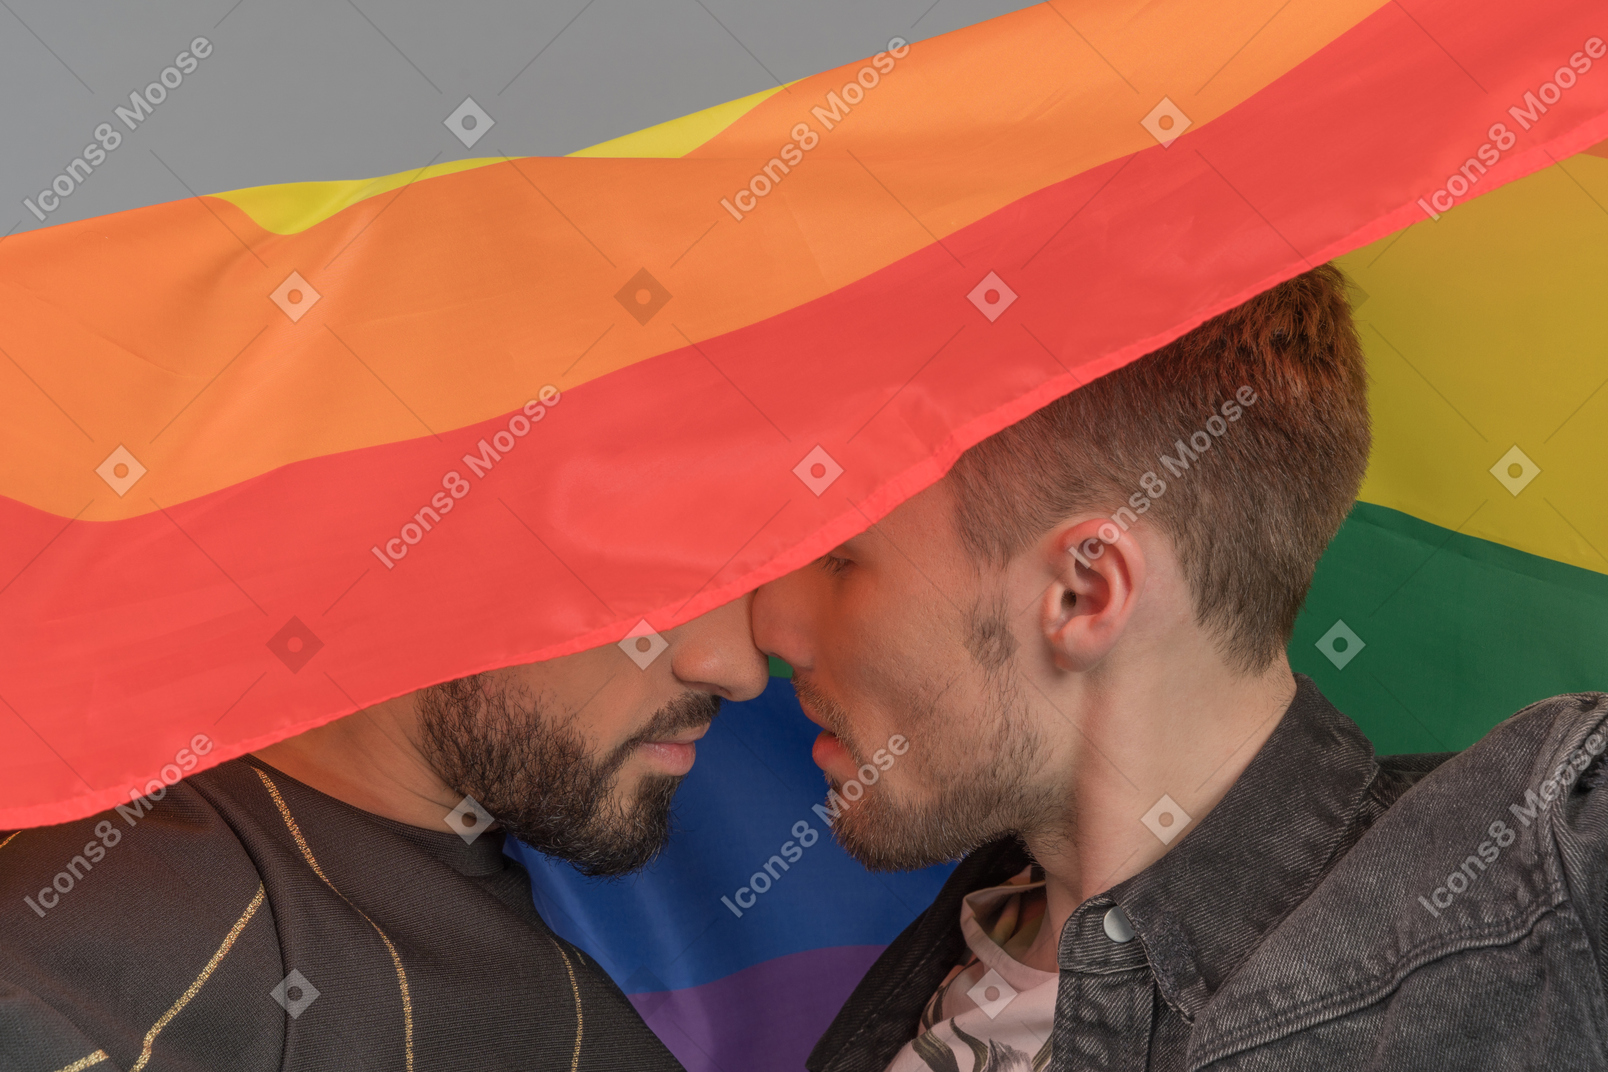 两个年轻人在 lgbt 旗帜下亲密接触鼻子的特写镜头